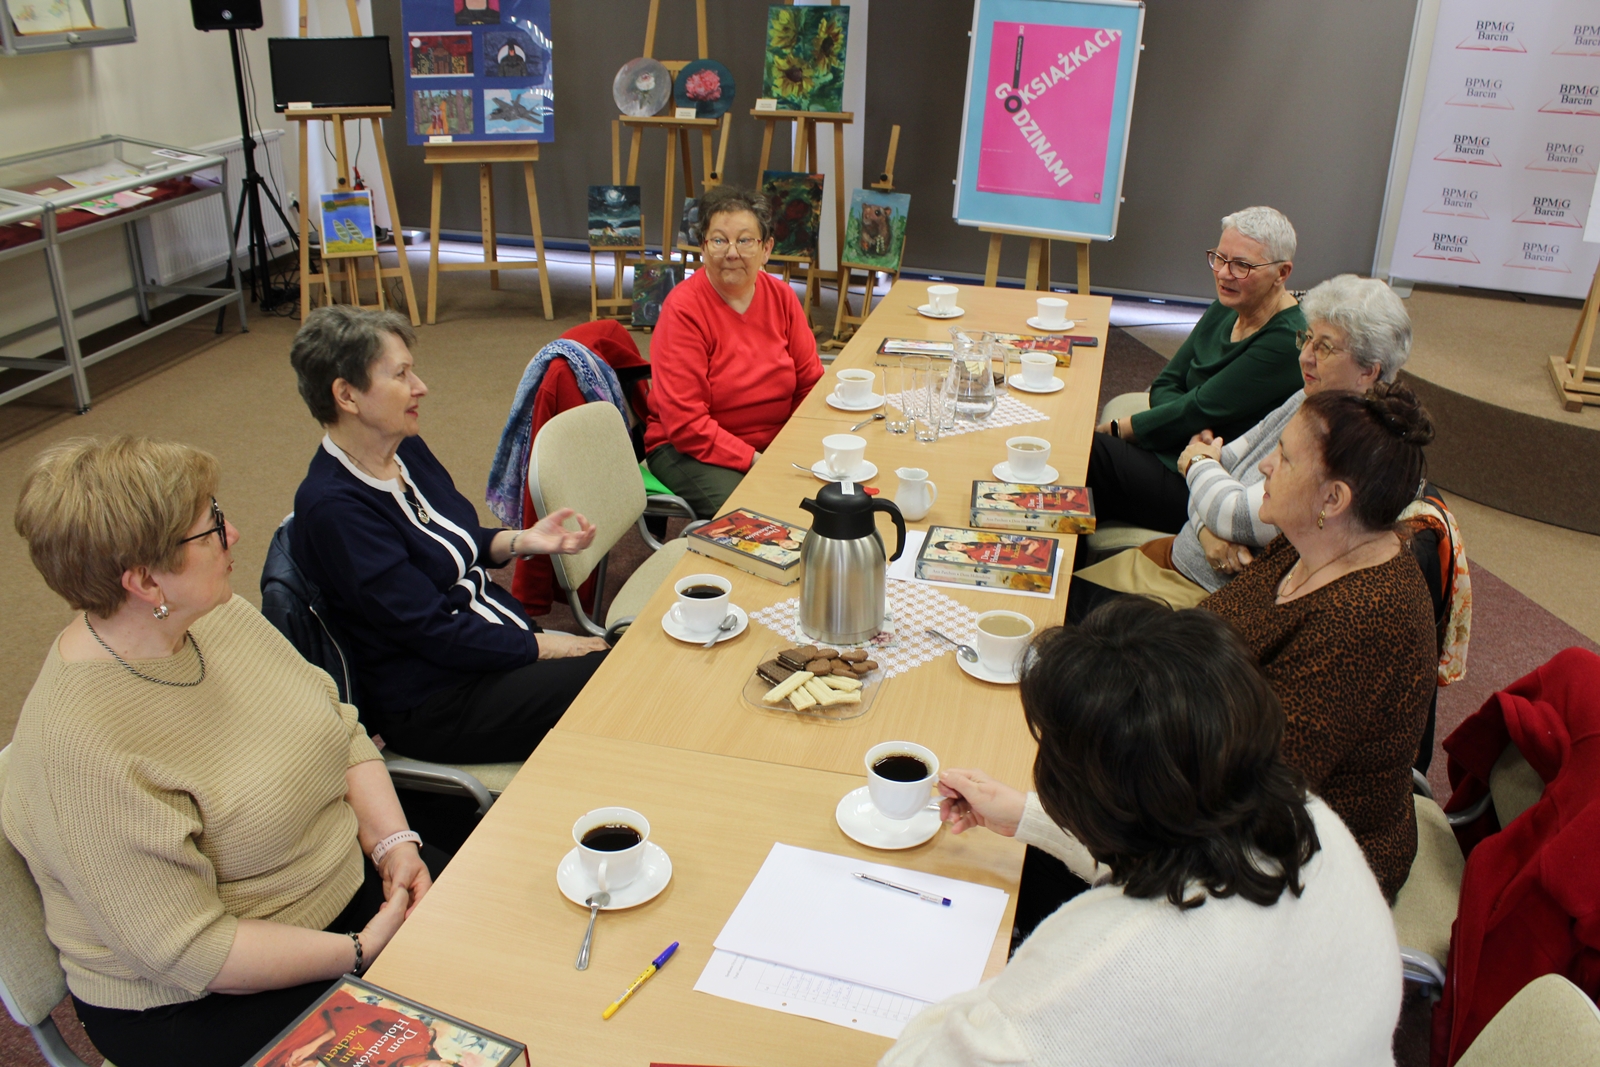 Grupa 7 kobiet w trakcie dyskusji na temat książki, siedzą przy stołach, popijają kawę i herbatę.